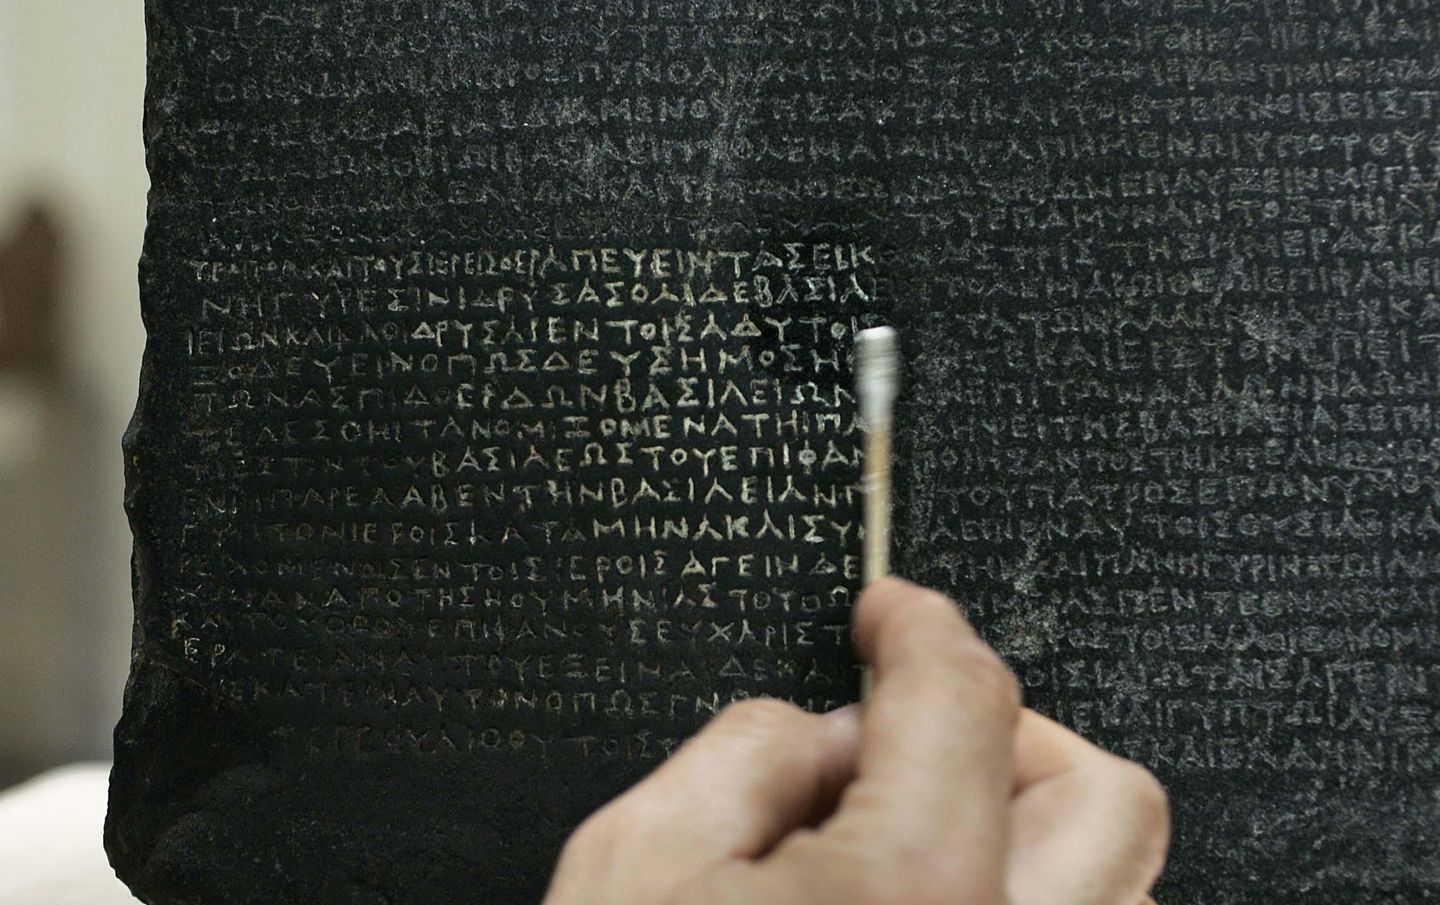 Mısırlı akademisyenler Rosetta Stone'un iadesi için dilekçe verdi